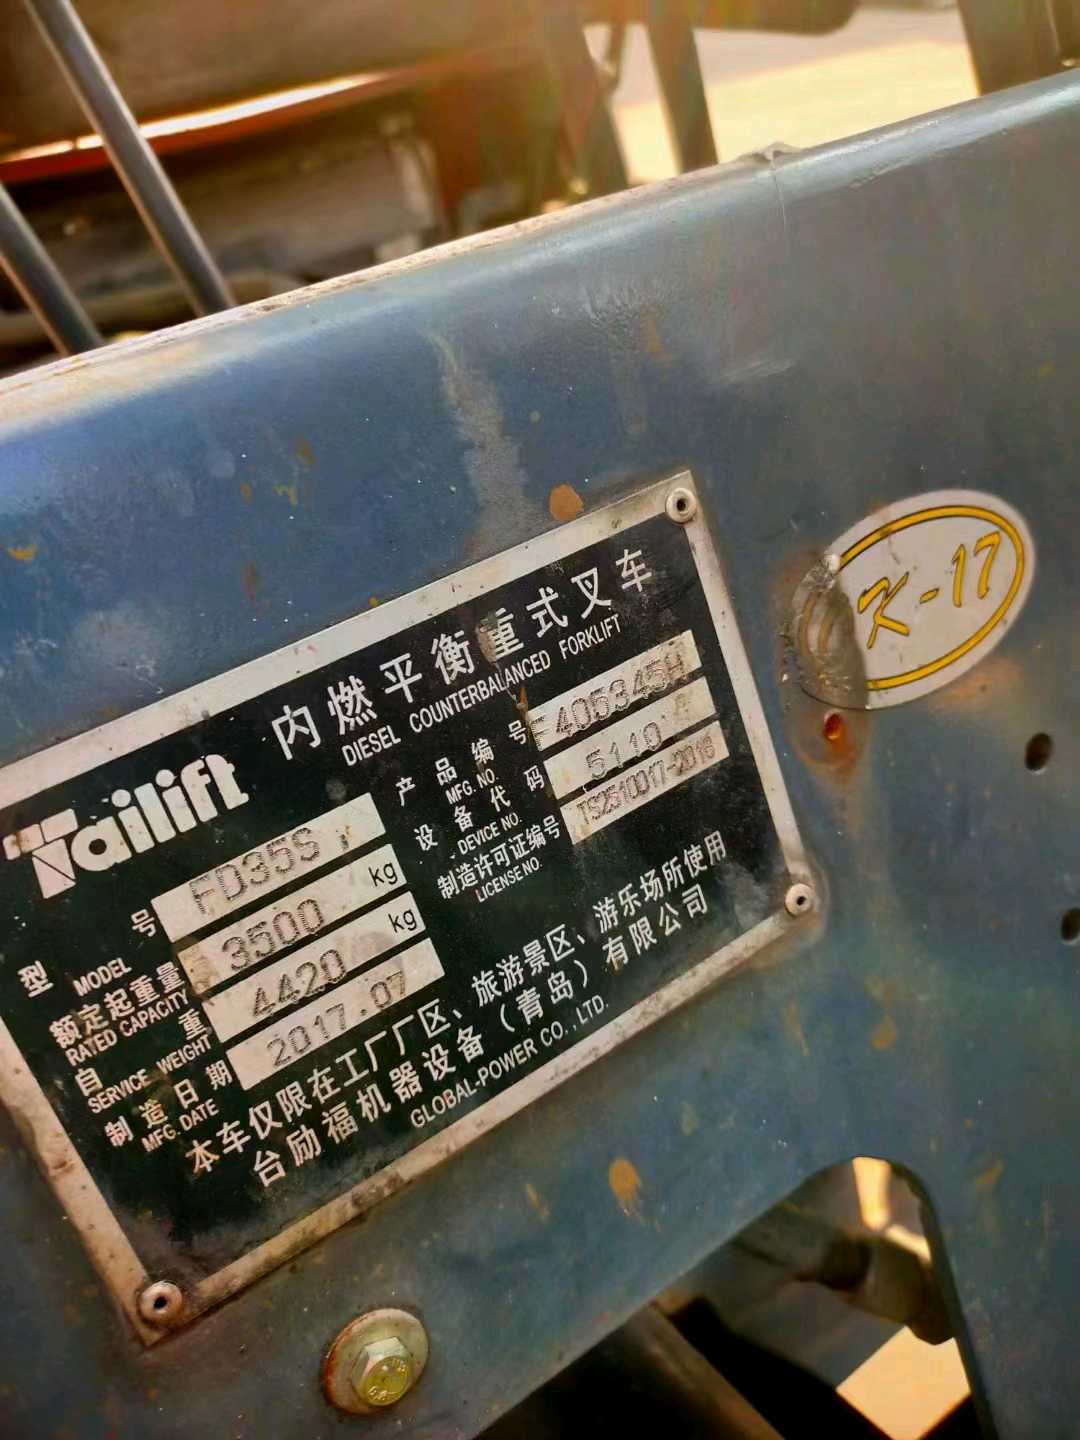 北京台励福3.5吨柴油车出租【价格 价格一览表 多少钱一个月】